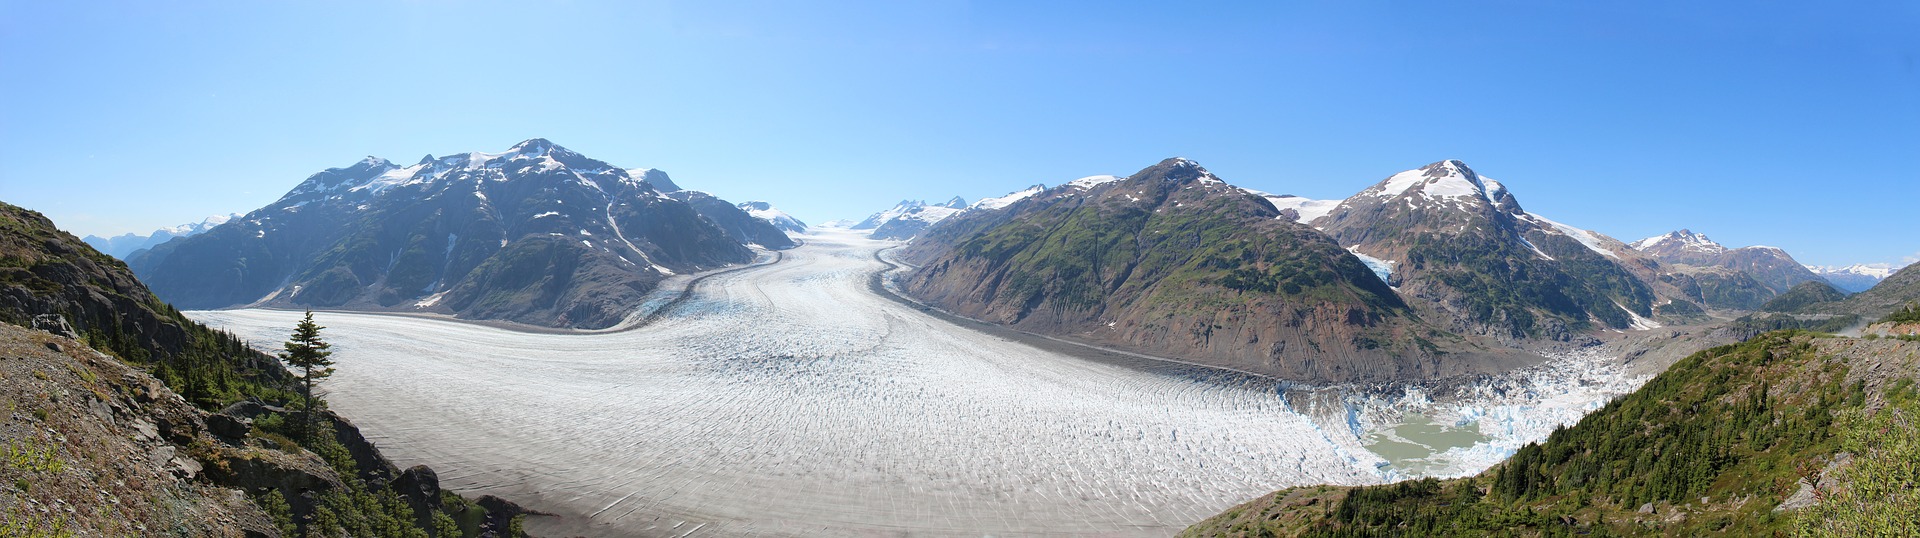 Alaska salmon-glacier